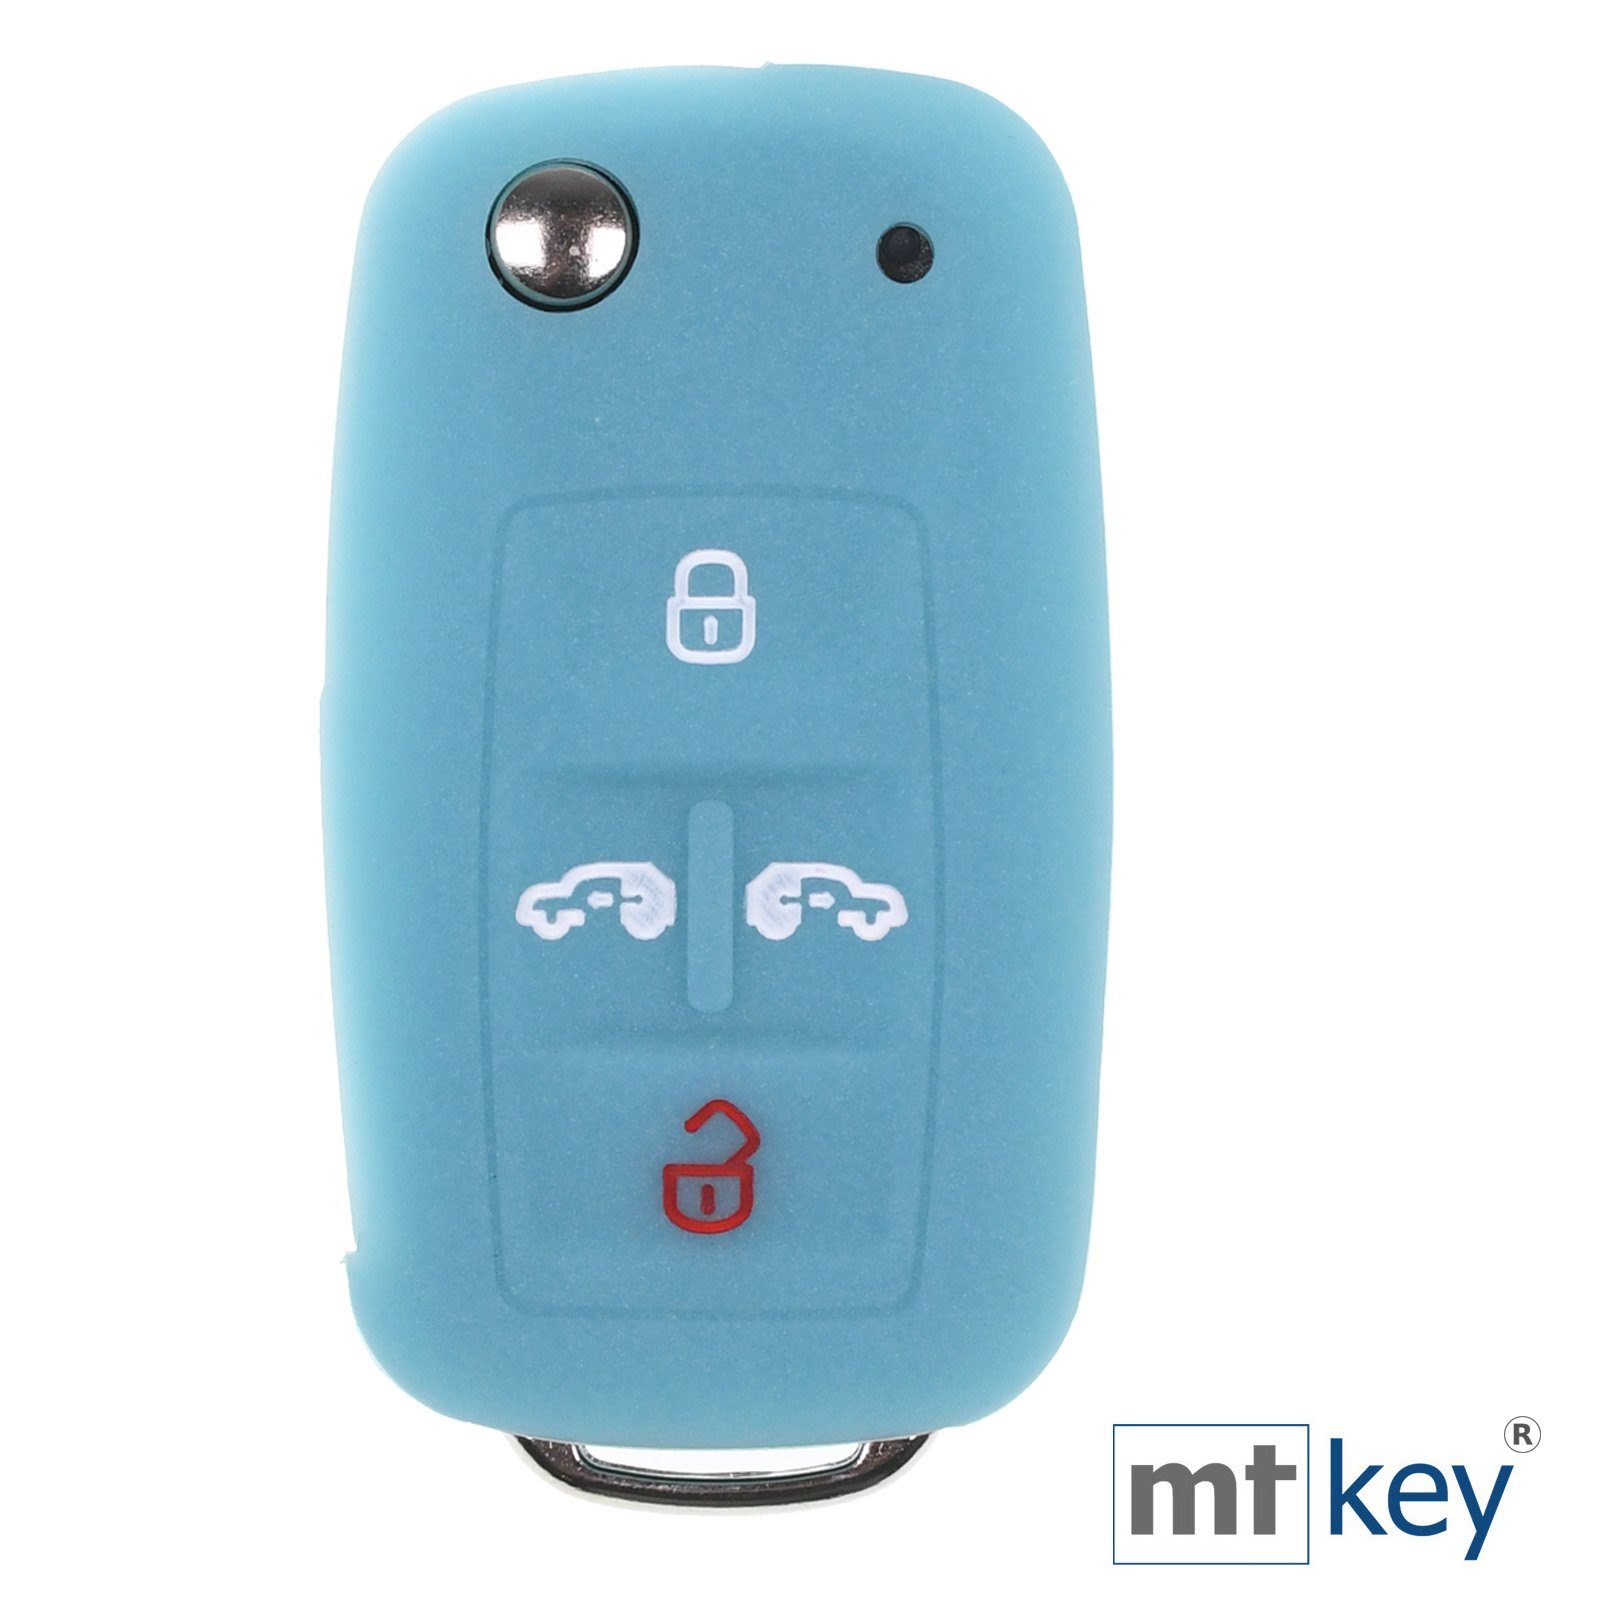 Blau, Multivan im T5 mt-key Schlüssel Design T6 VW Schlüsseltasche Autoschlüssel fluoreszierend Tasten Alhambra Caddy für Wabe 4 Silikon Schutzhülle Seat Sharan